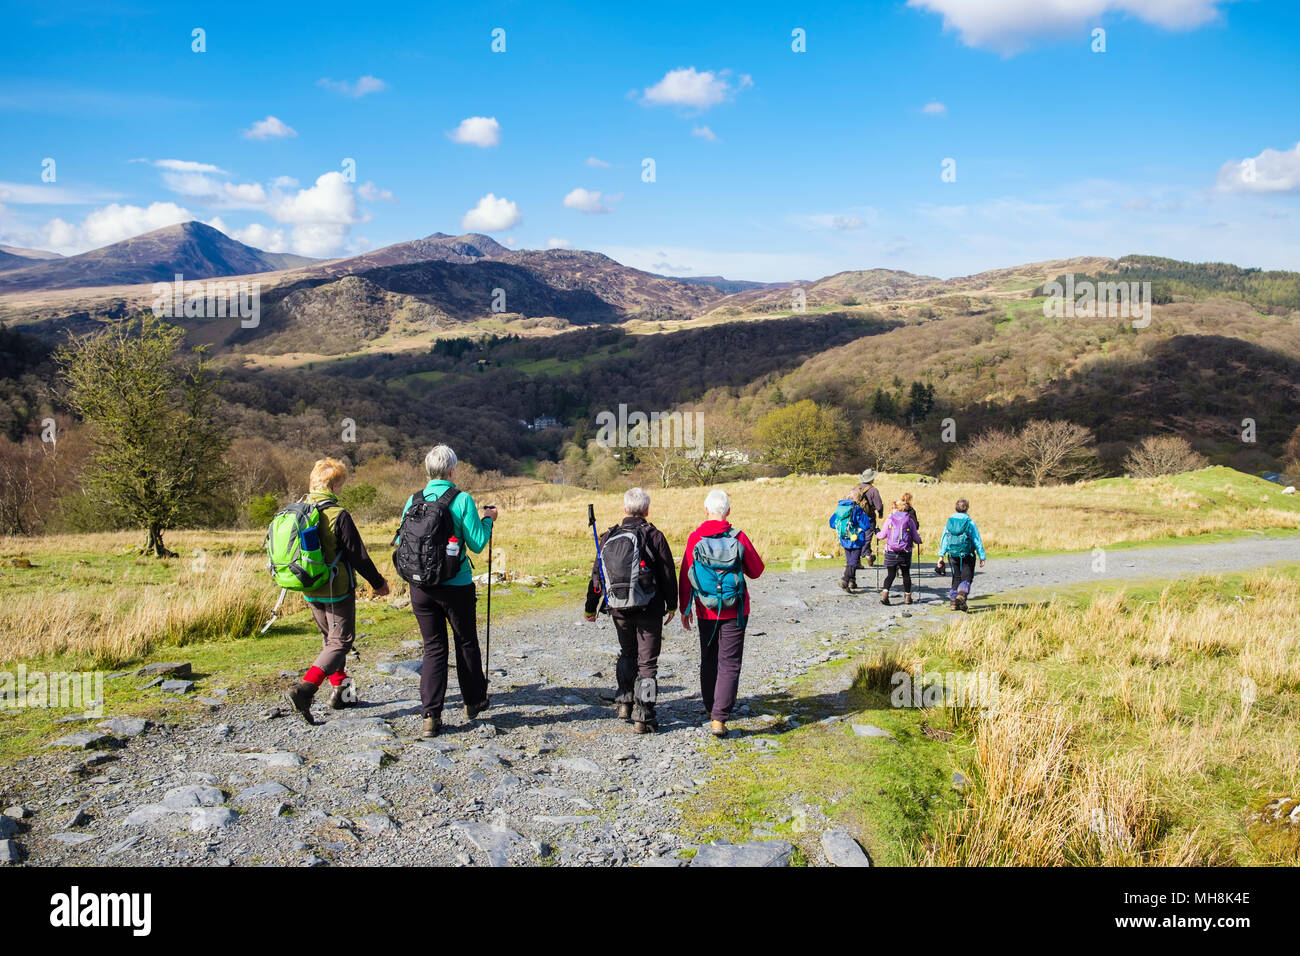 Les randonneurs randonnée sur une piste dans la campagne du pays Moel Siabod en montagnes de Snowdonia National Park. Capel Curig, Pays de Galles, Royaume-Uni, Angleterre Banque D'Images